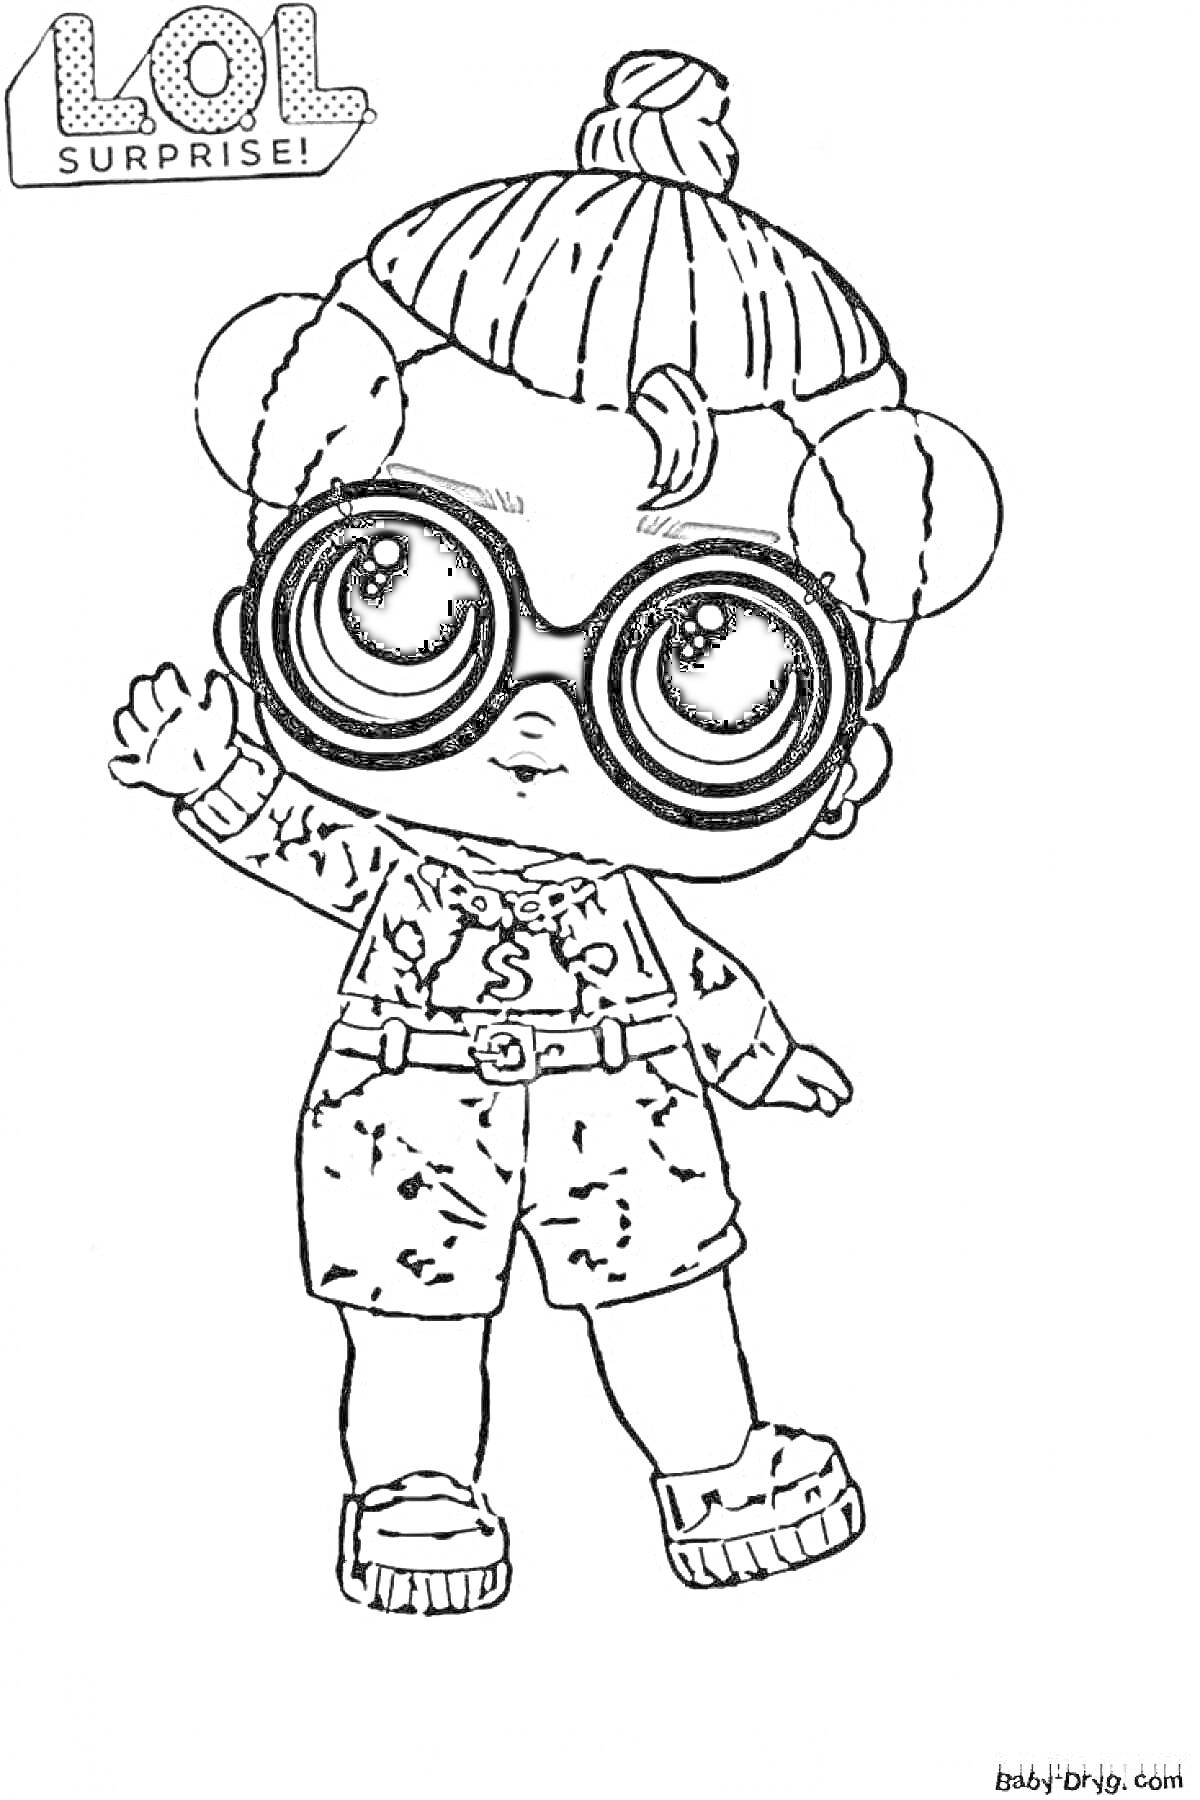 Раскраска Кукла LOL Surprise мальчик с большими очками, причёской в пучок, в шортах и футболке с узорами, поднимает руку